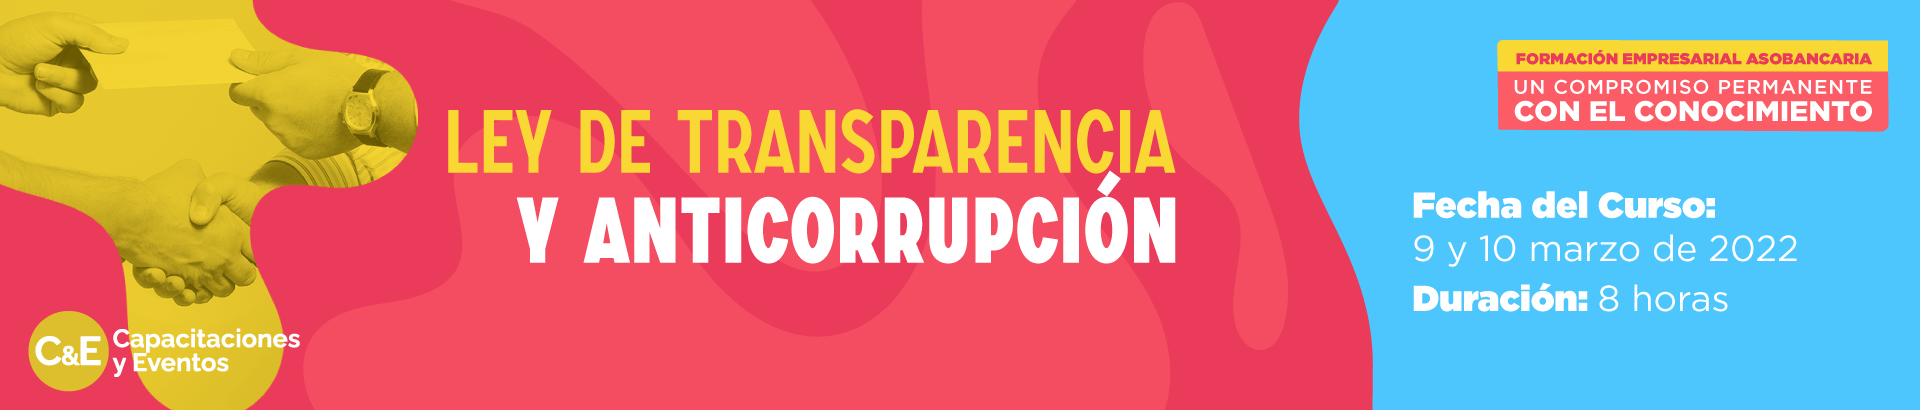 22-02-Ley-de-Transparencia-y-Anticorupcion-banner1920